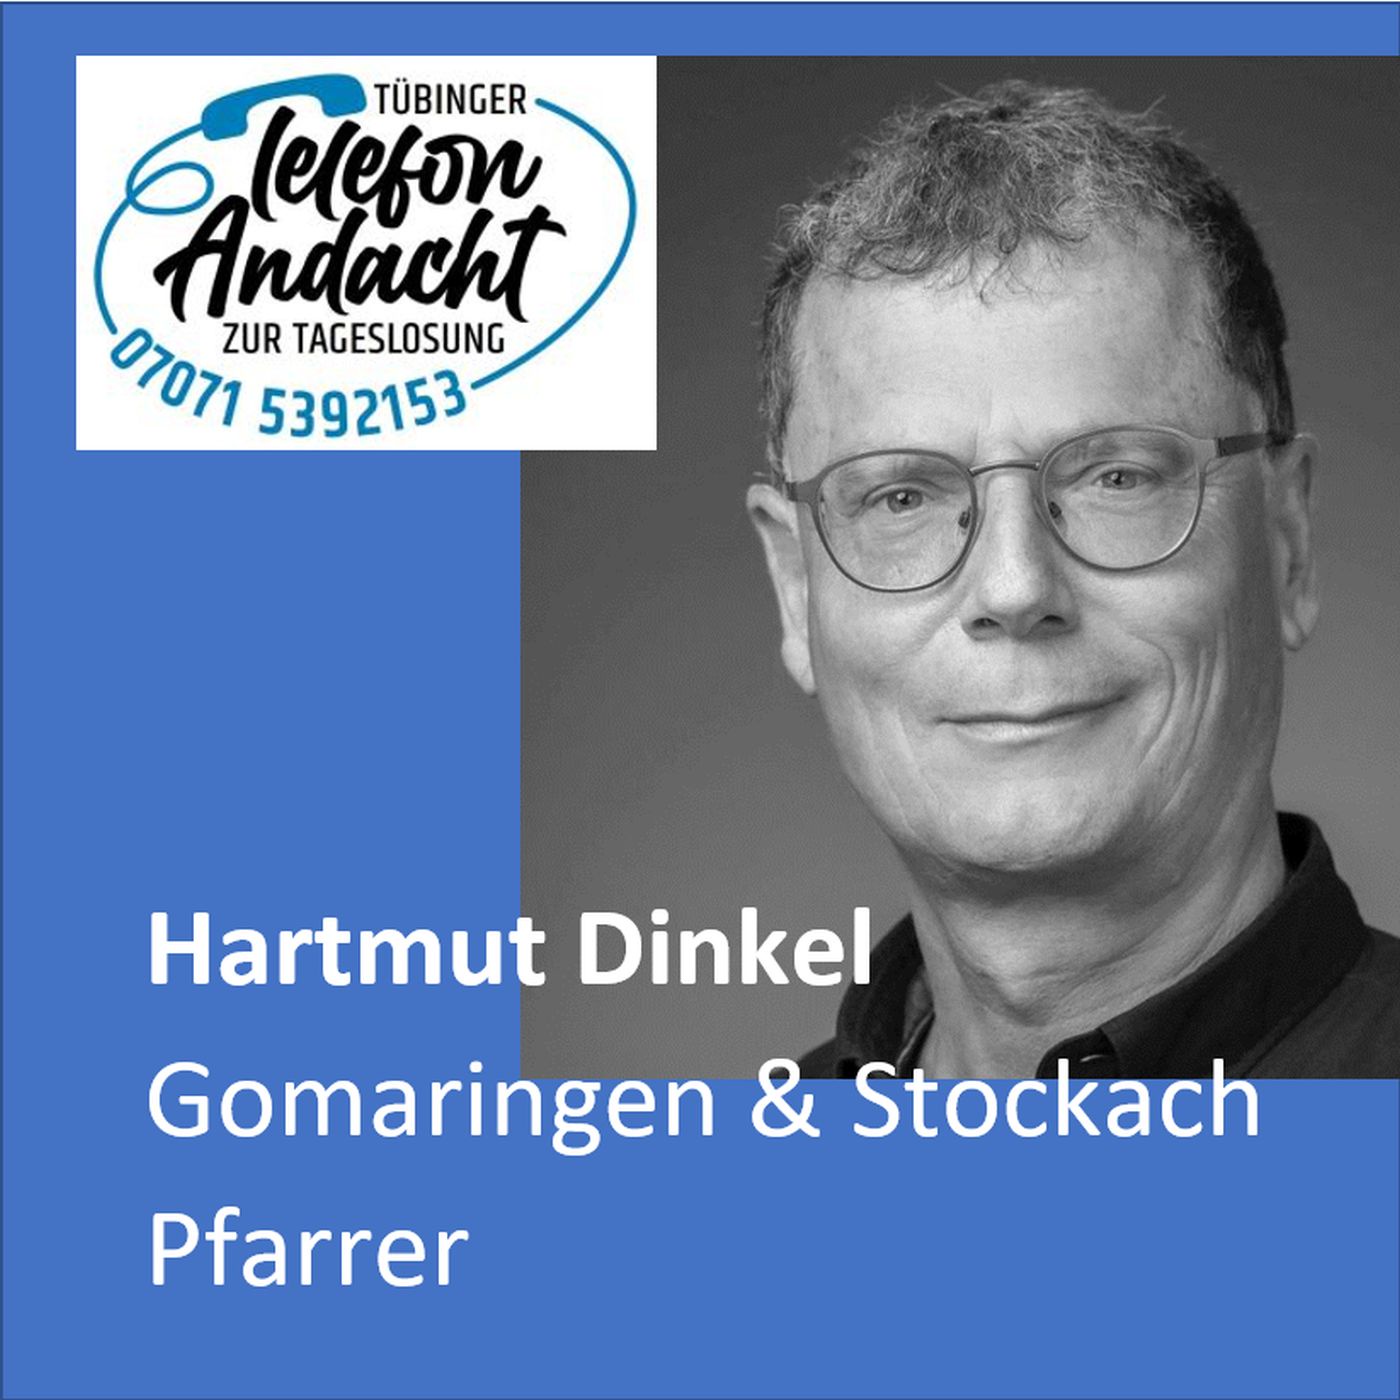 24 05 19 Hartmut Dinkel